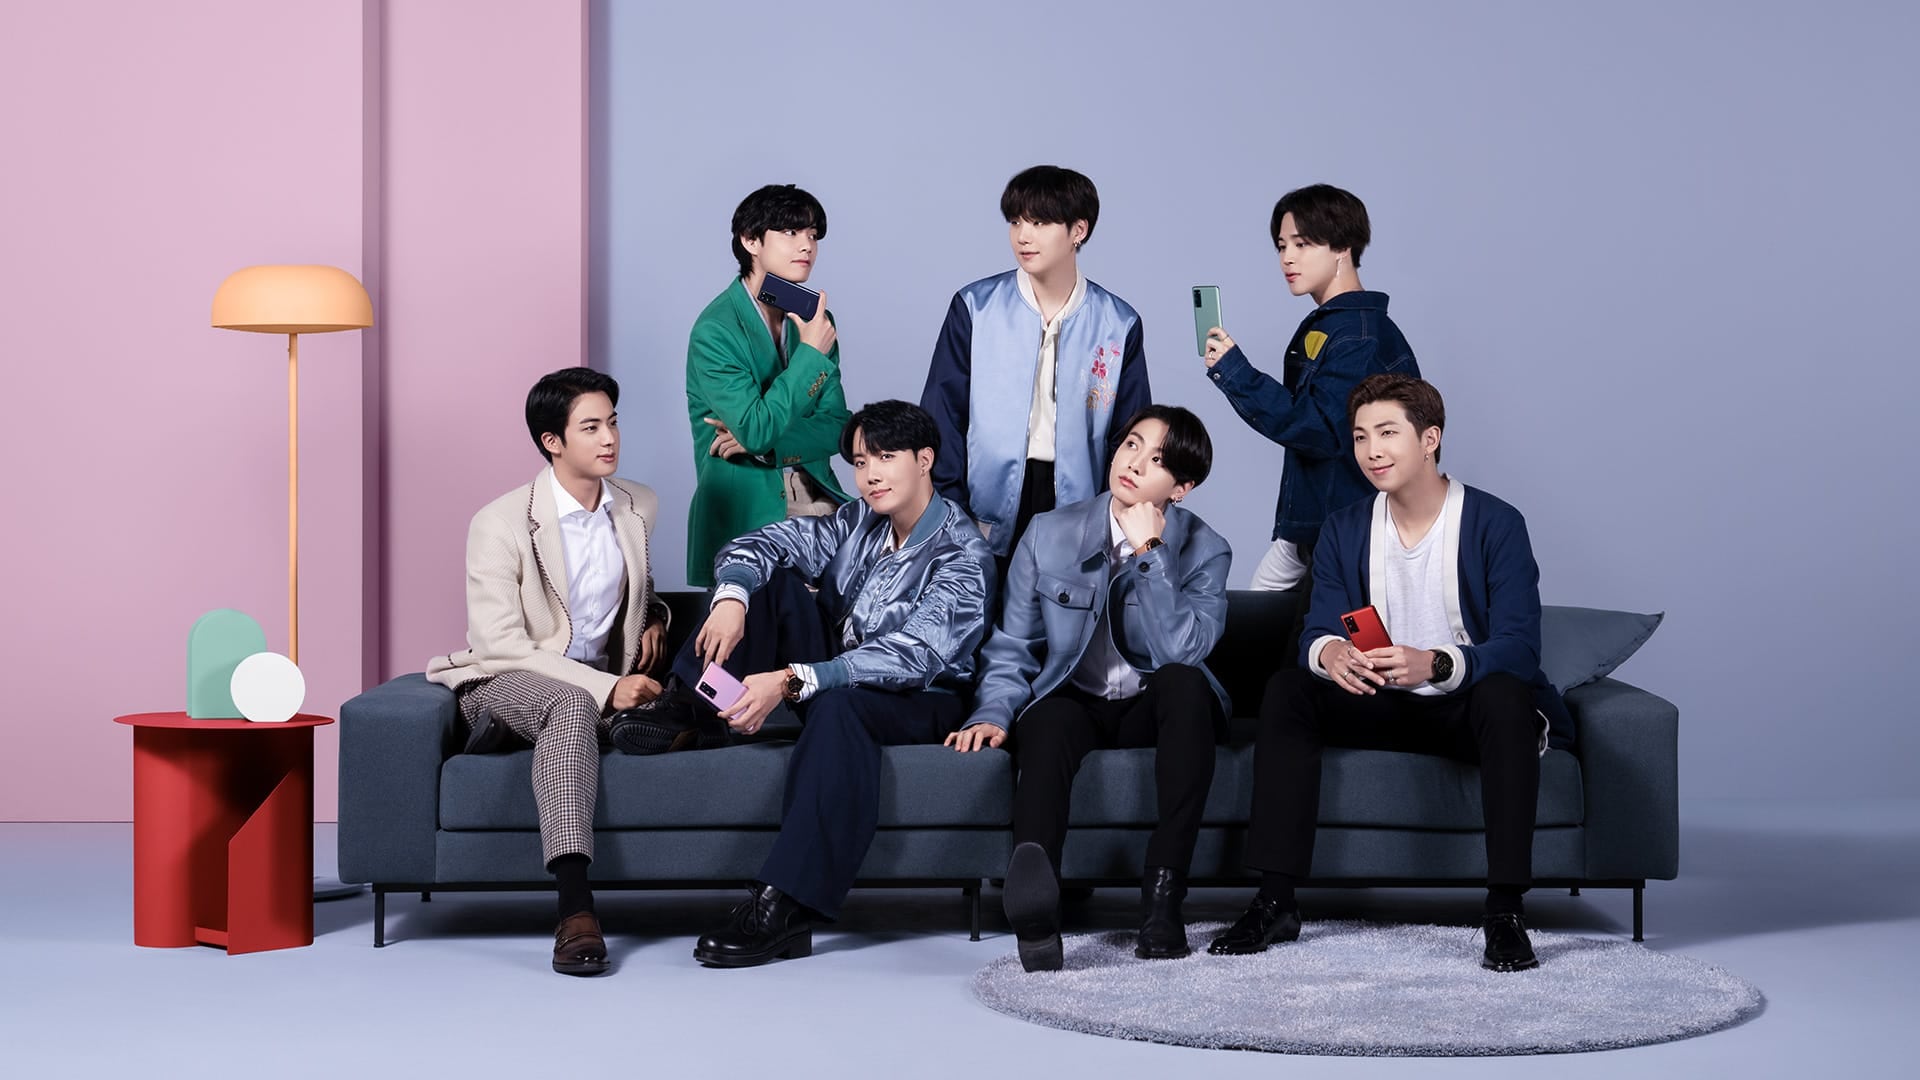 Die Mitglieder von BTS, vier von Ihnen sitzen auf einer Couch und drei stehen dahinter. Sie alle haben das Galaxy S20 FE Smartphone in unterschiedlichen Farben in der Hand.